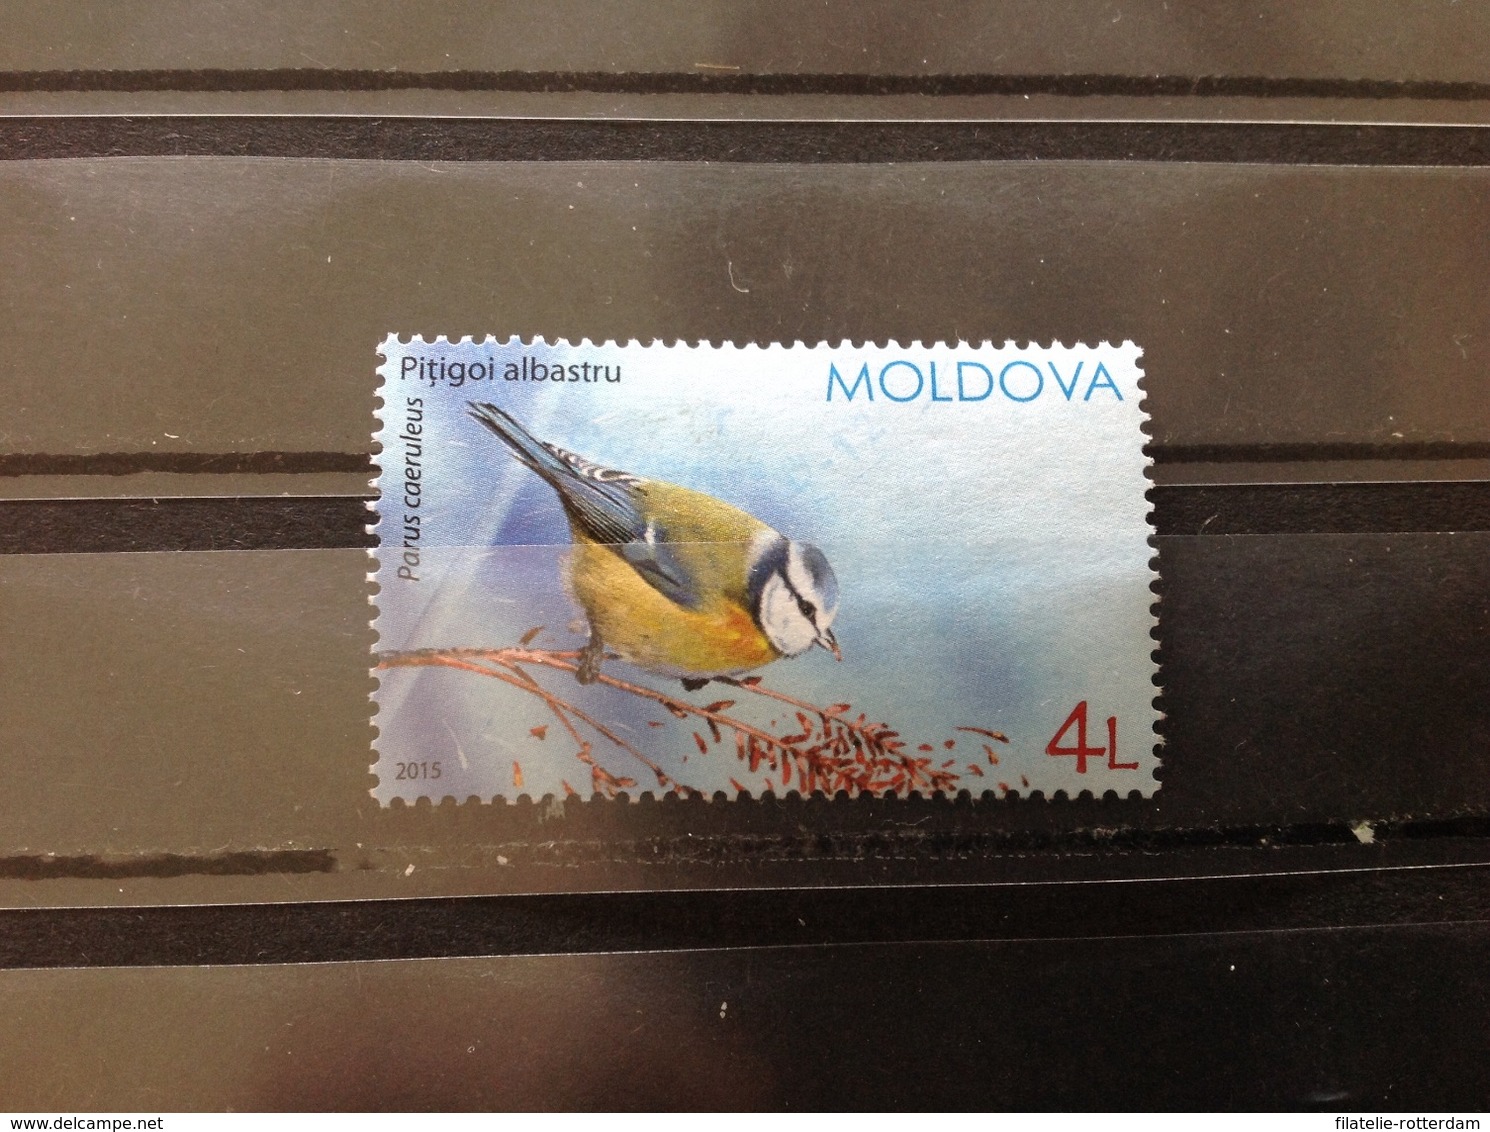 Moldavië / Moldova - Vogels (4) 2015 - Moldavië